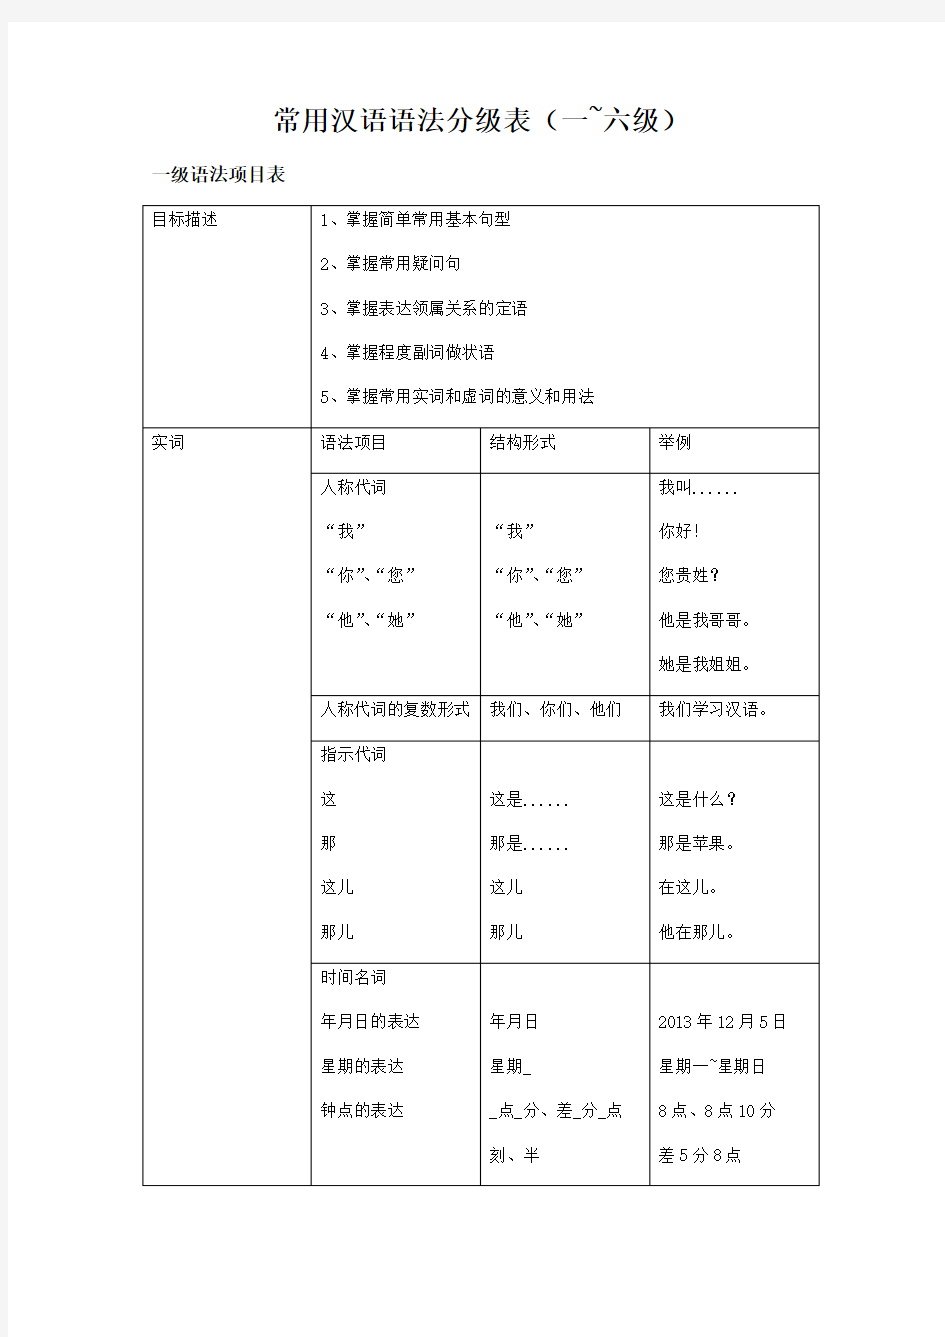 常用汉语语法分级表